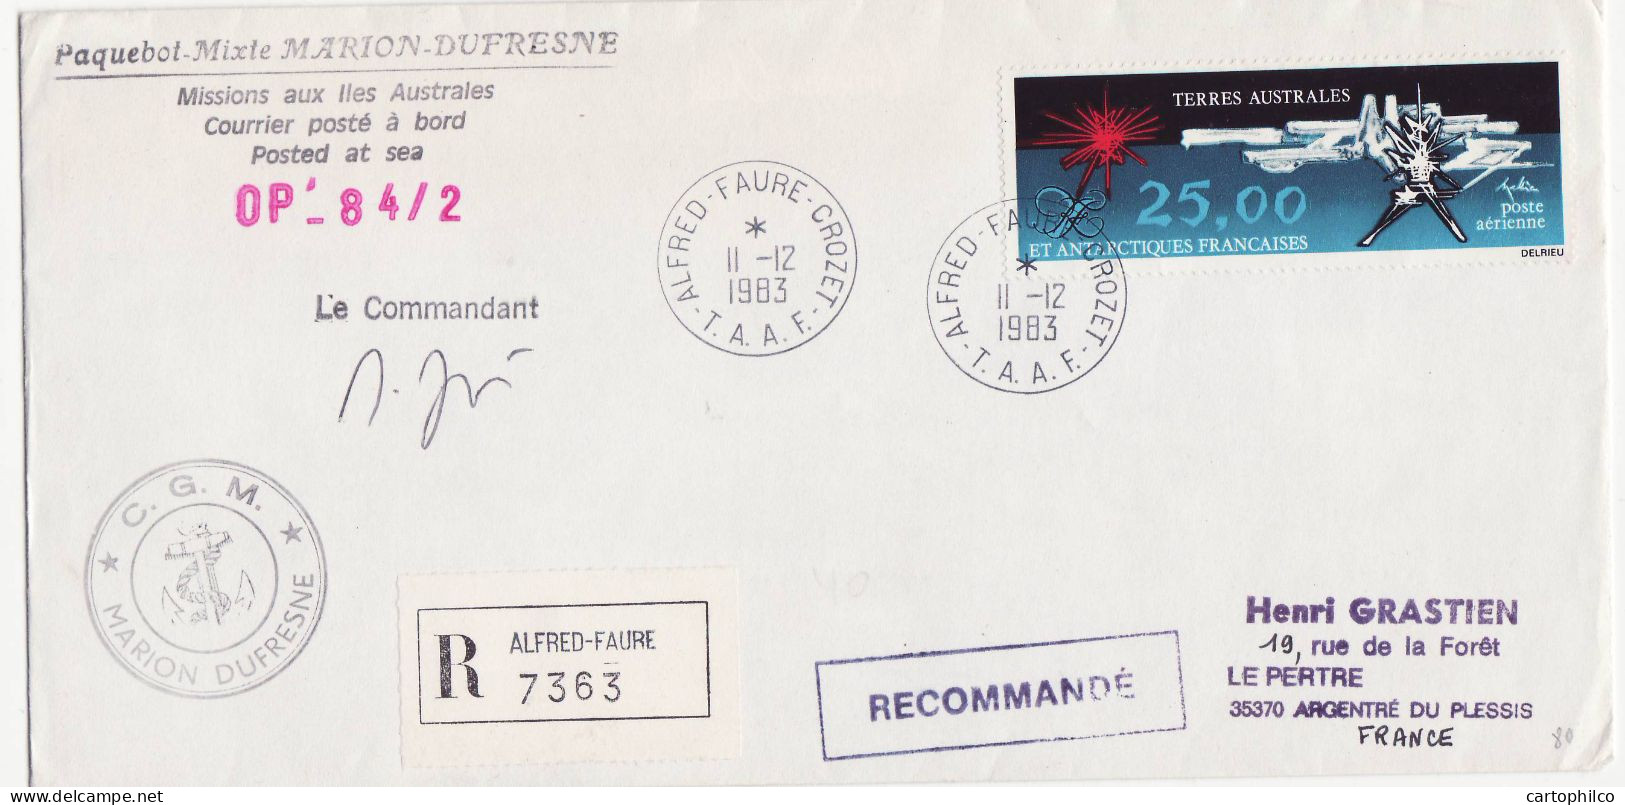 TAAF Lettre Marion Dufresne 11 12 1983 Alfred Faure Crozet Pour Argentre Du Plessis - Covers & Documents